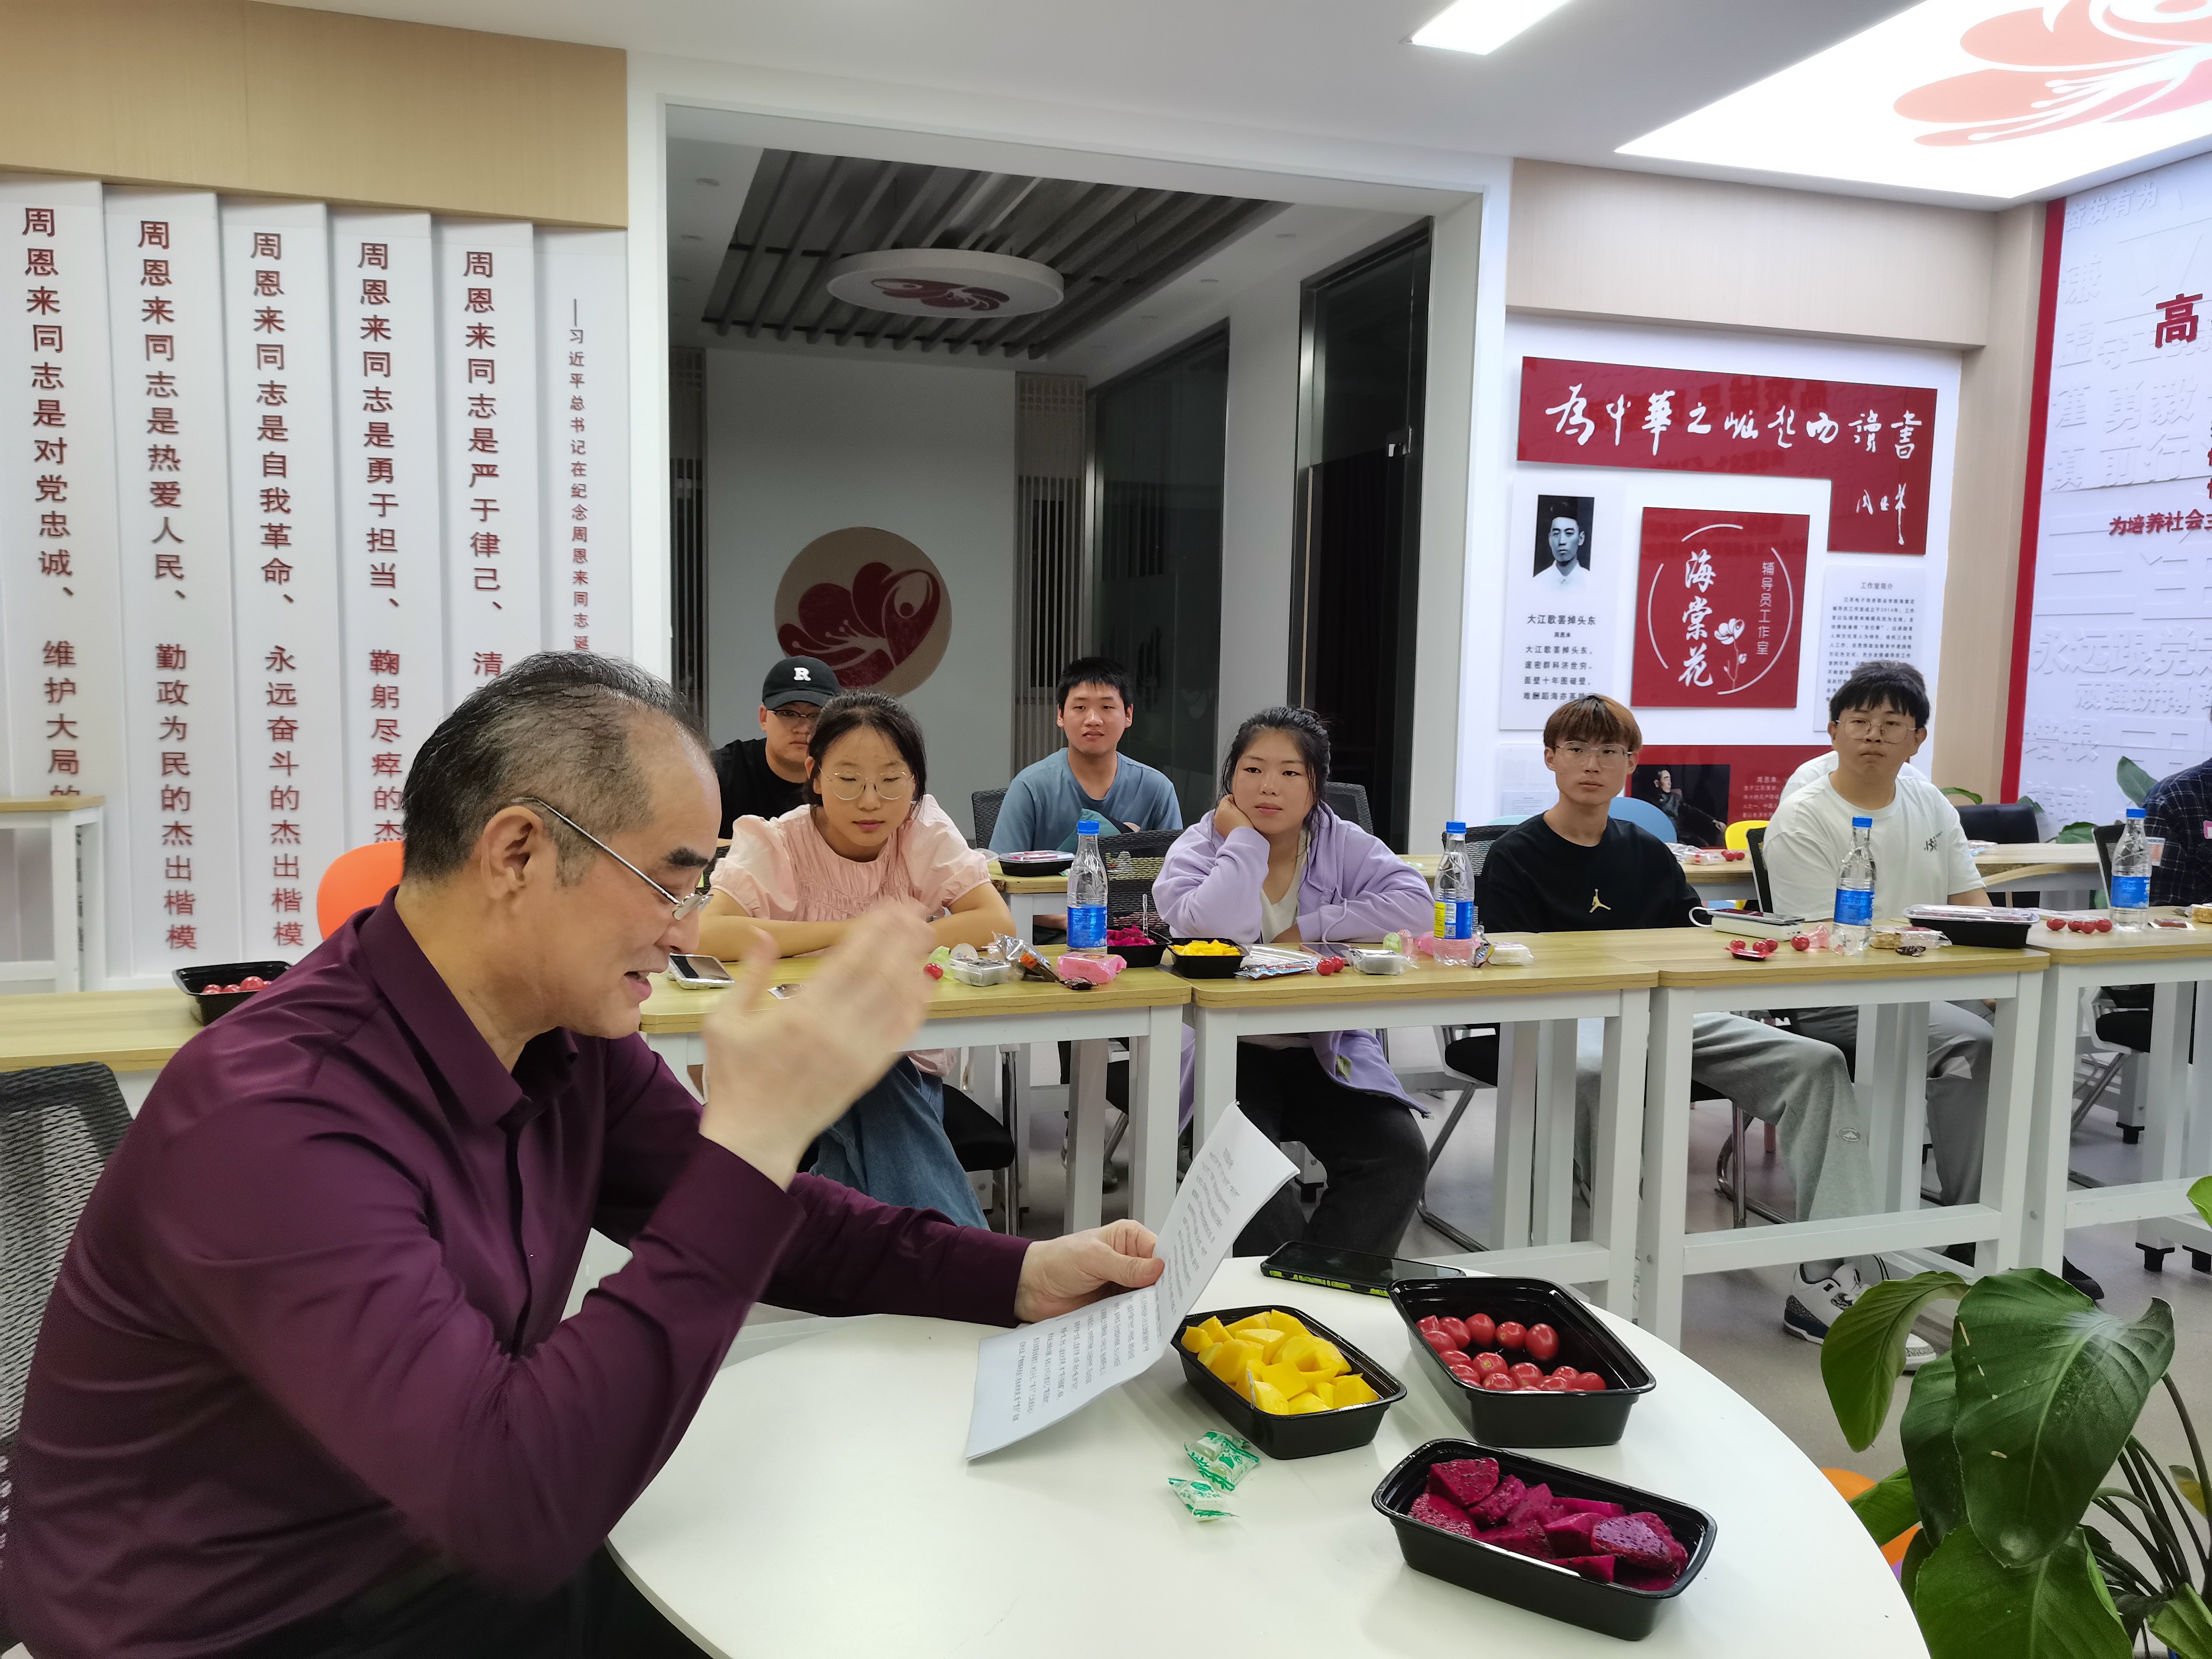 张道辉先生为同学们宣讲中秋传统文化的内涵和魅力。